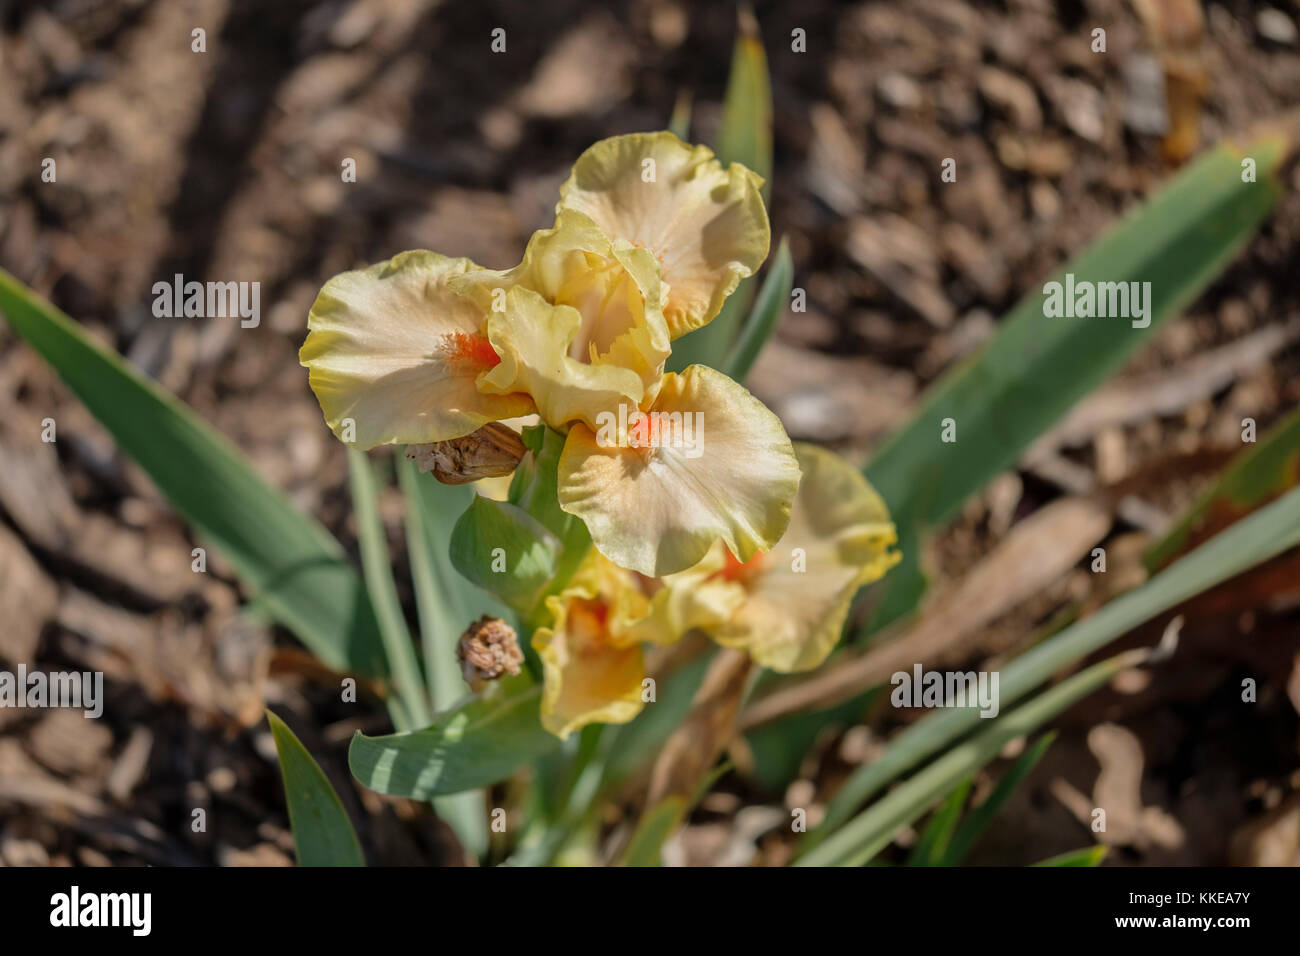 Eine gelbe Iris Blume blühen im späten November nach einem harten einfrieren. Zuchtsorte Segue, S. Schwarz. Oklahoma City, Oklahoma, USA. Stockfoto